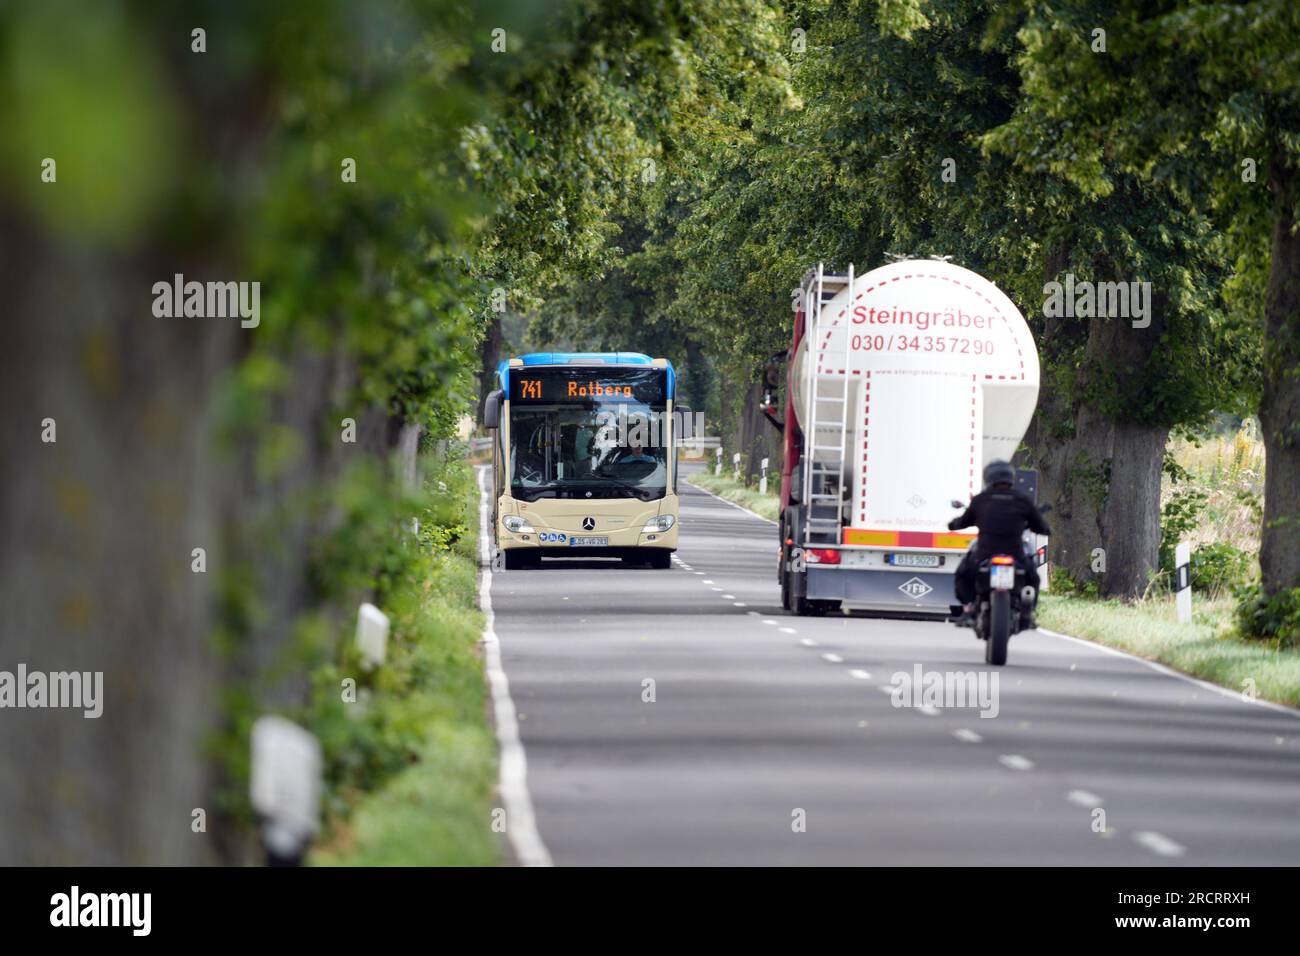 13 luglio 2023, Berlino, Schönefeld: Un autobus della linea 741 con destinazione Rotberg è in auto da Kiekebusch sulla strada di campagna L402 tra avenue Trees. Dall'altro lato della strada, una motocicletta sta guidando dietro un camion. Foto: Soeren Stache/dpa Foto Stock